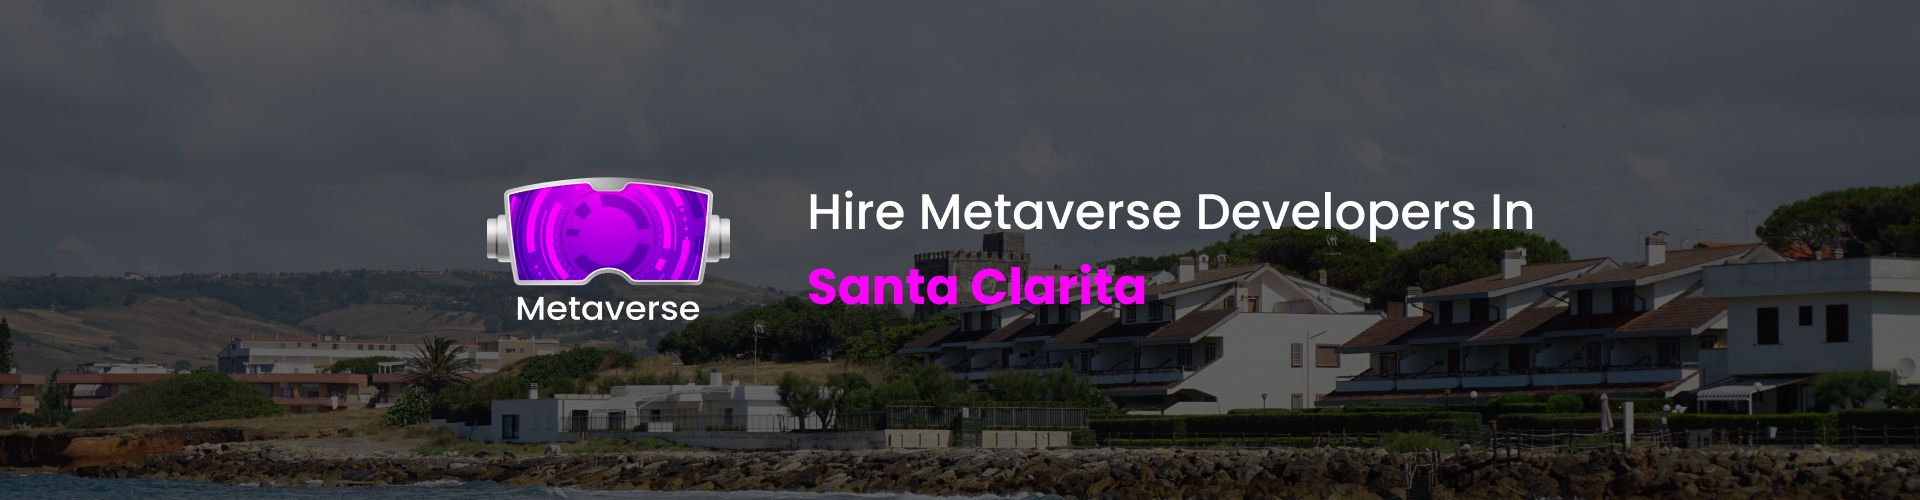 hire metaverse developers in santa clarita